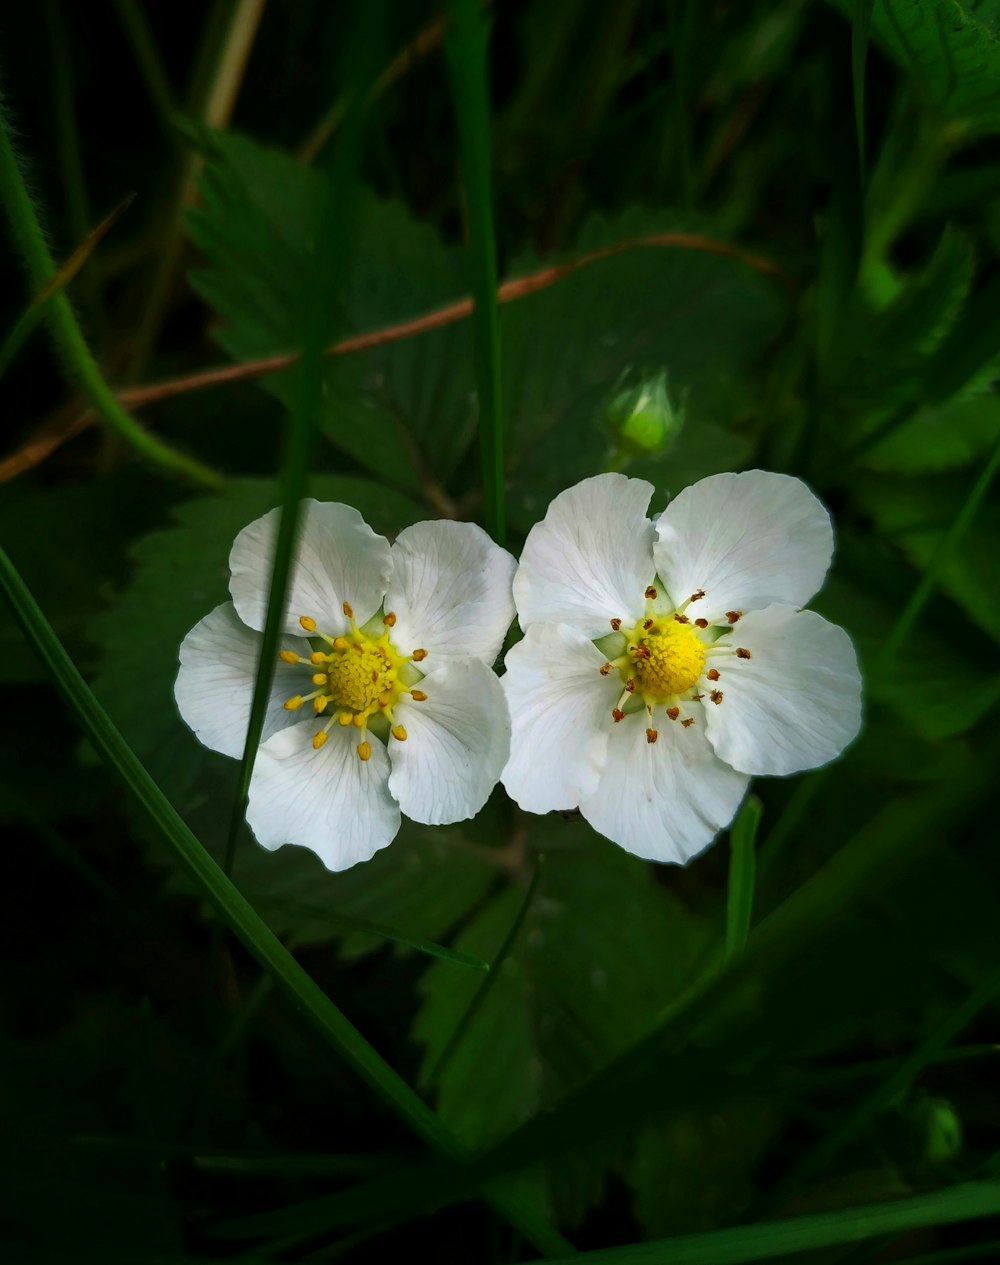 due fiori bianchi con centri gialli nell'erba